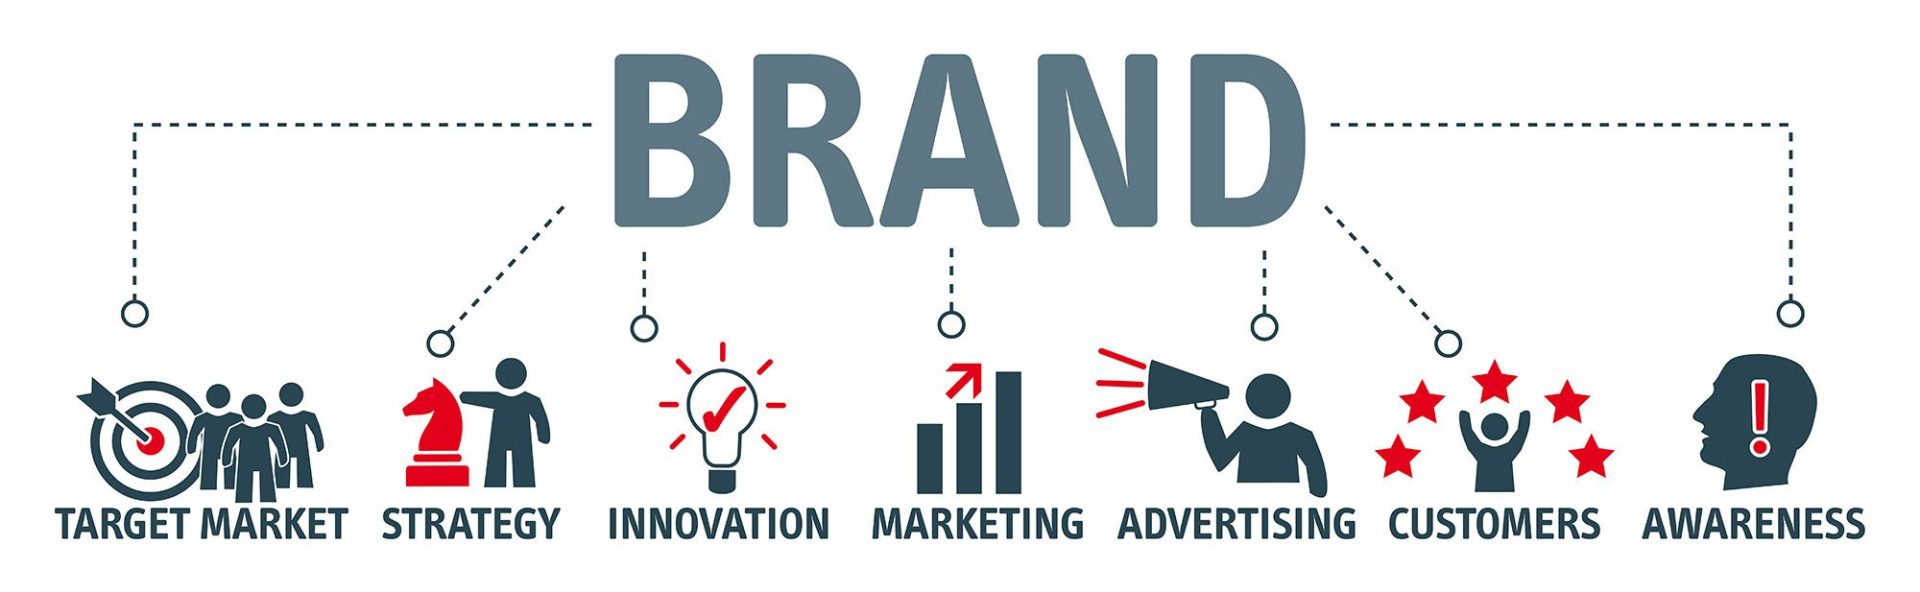 ways to improve brand awareness